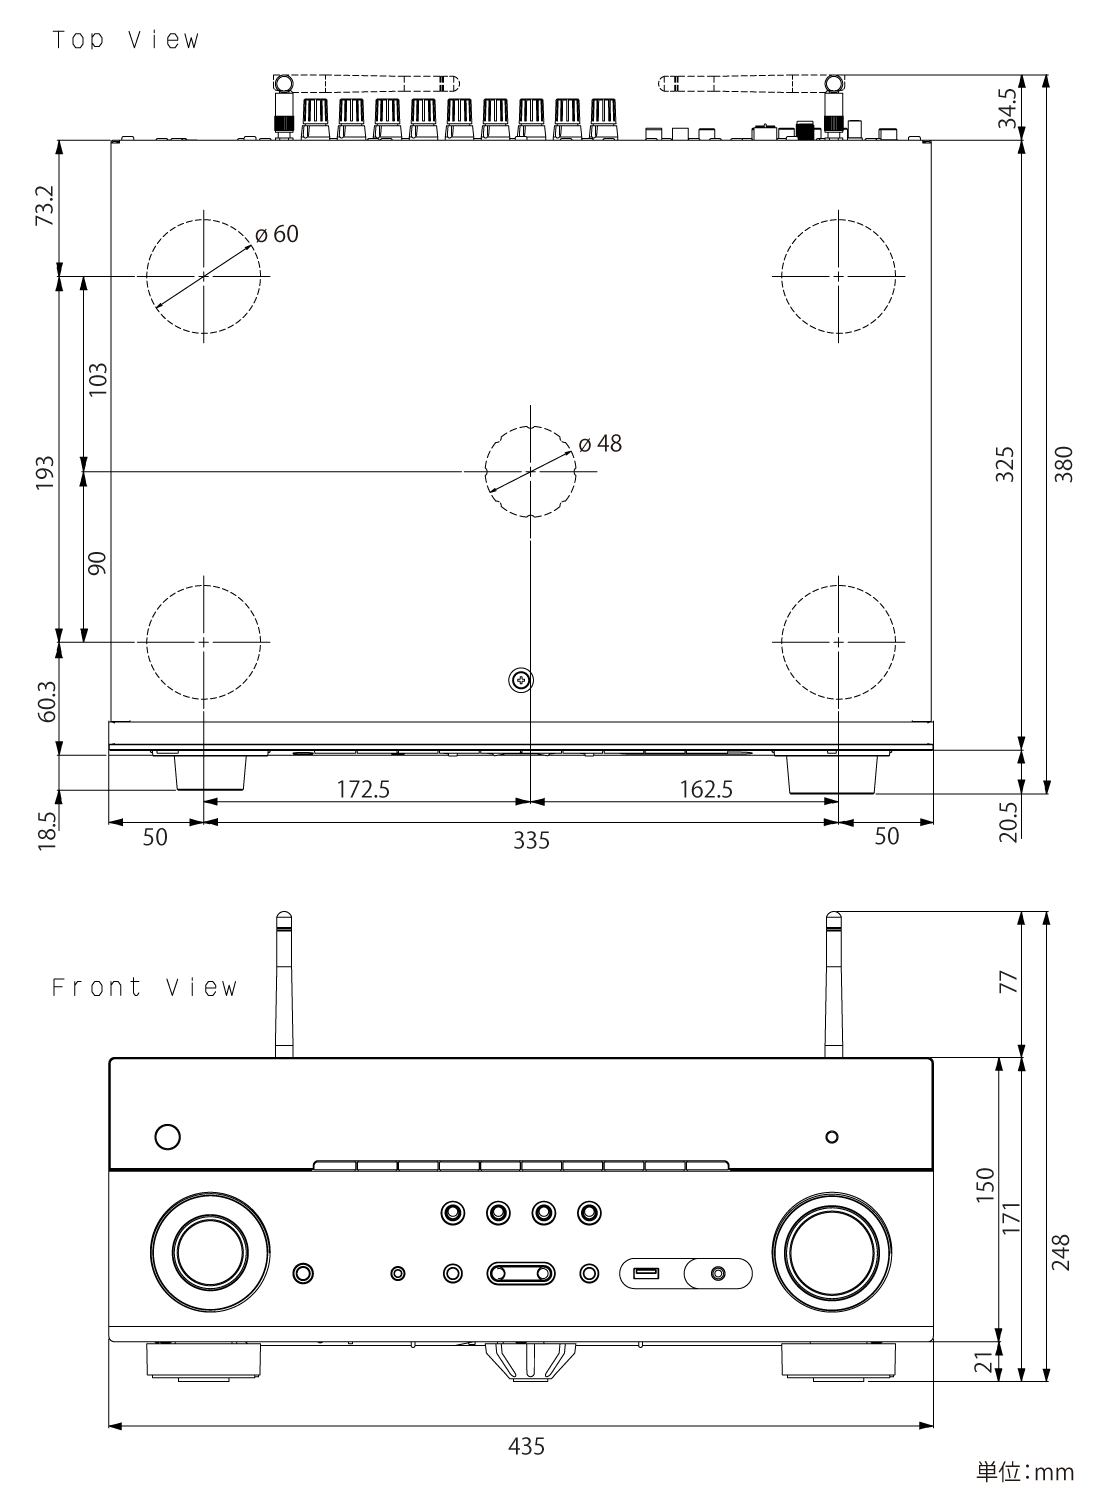 ヤマハ | RX-A780 - AVアンプ - 本体寸法図